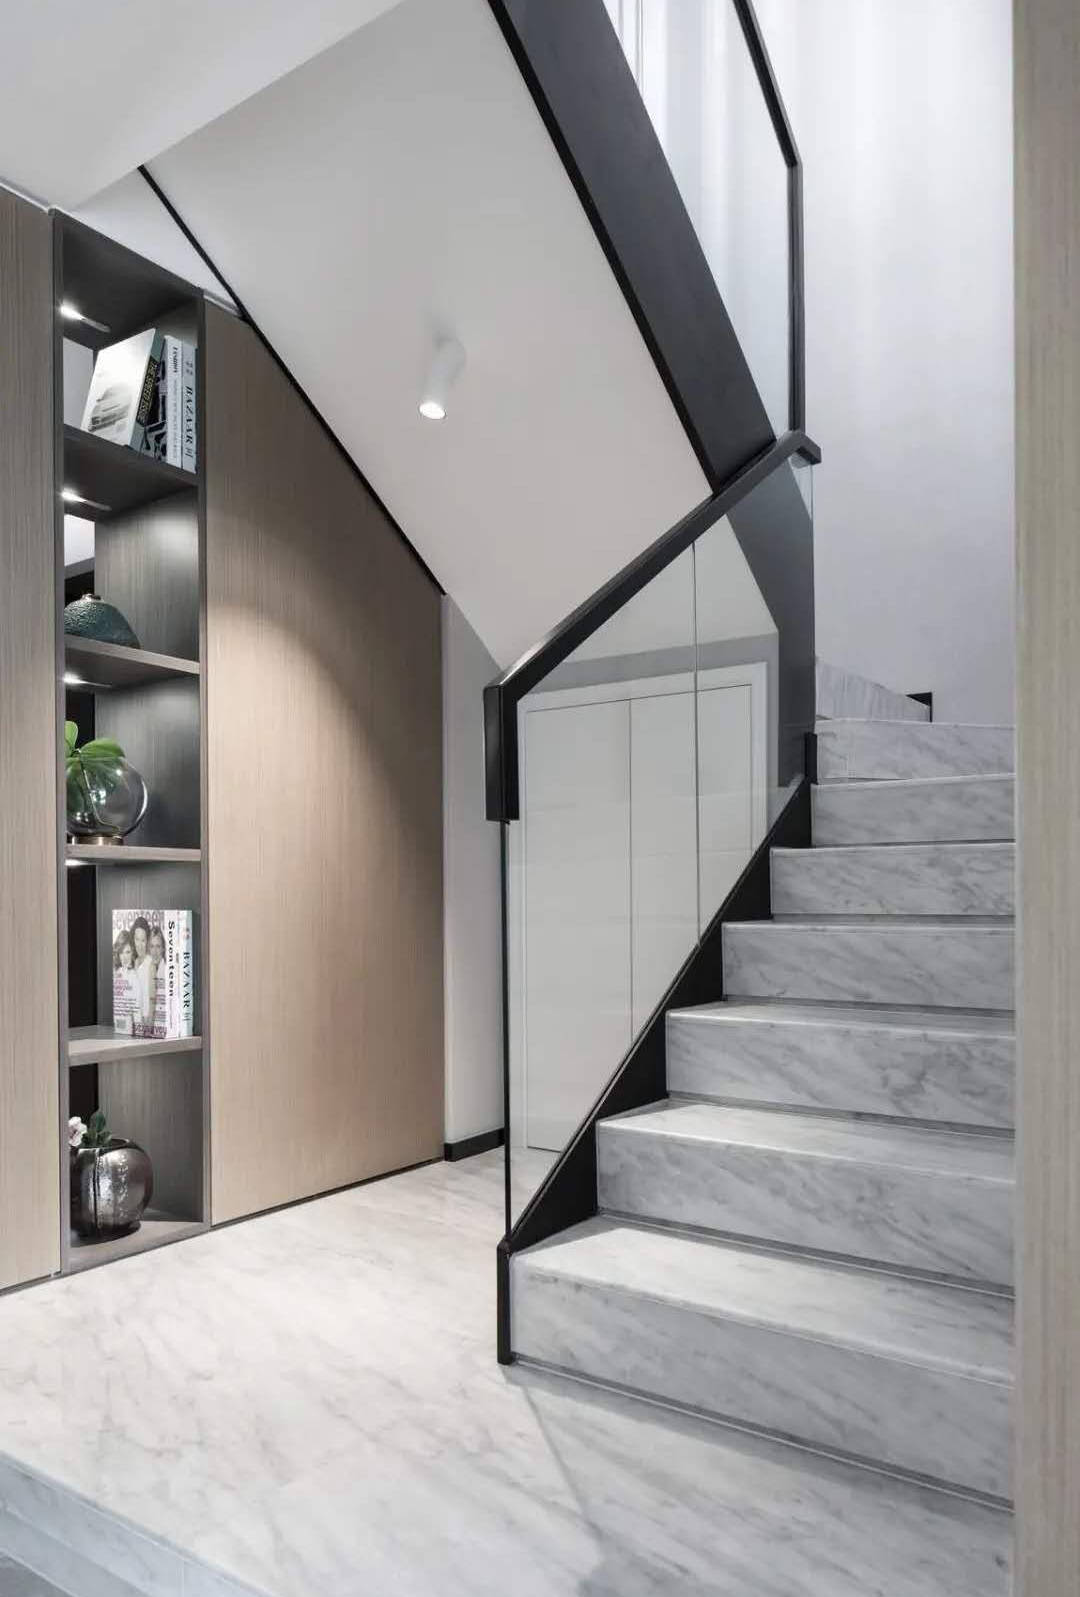 楼梯扶手是玻璃质感的,结合黑色扶手边框,在雅白的楼梯踏步地砖空间下